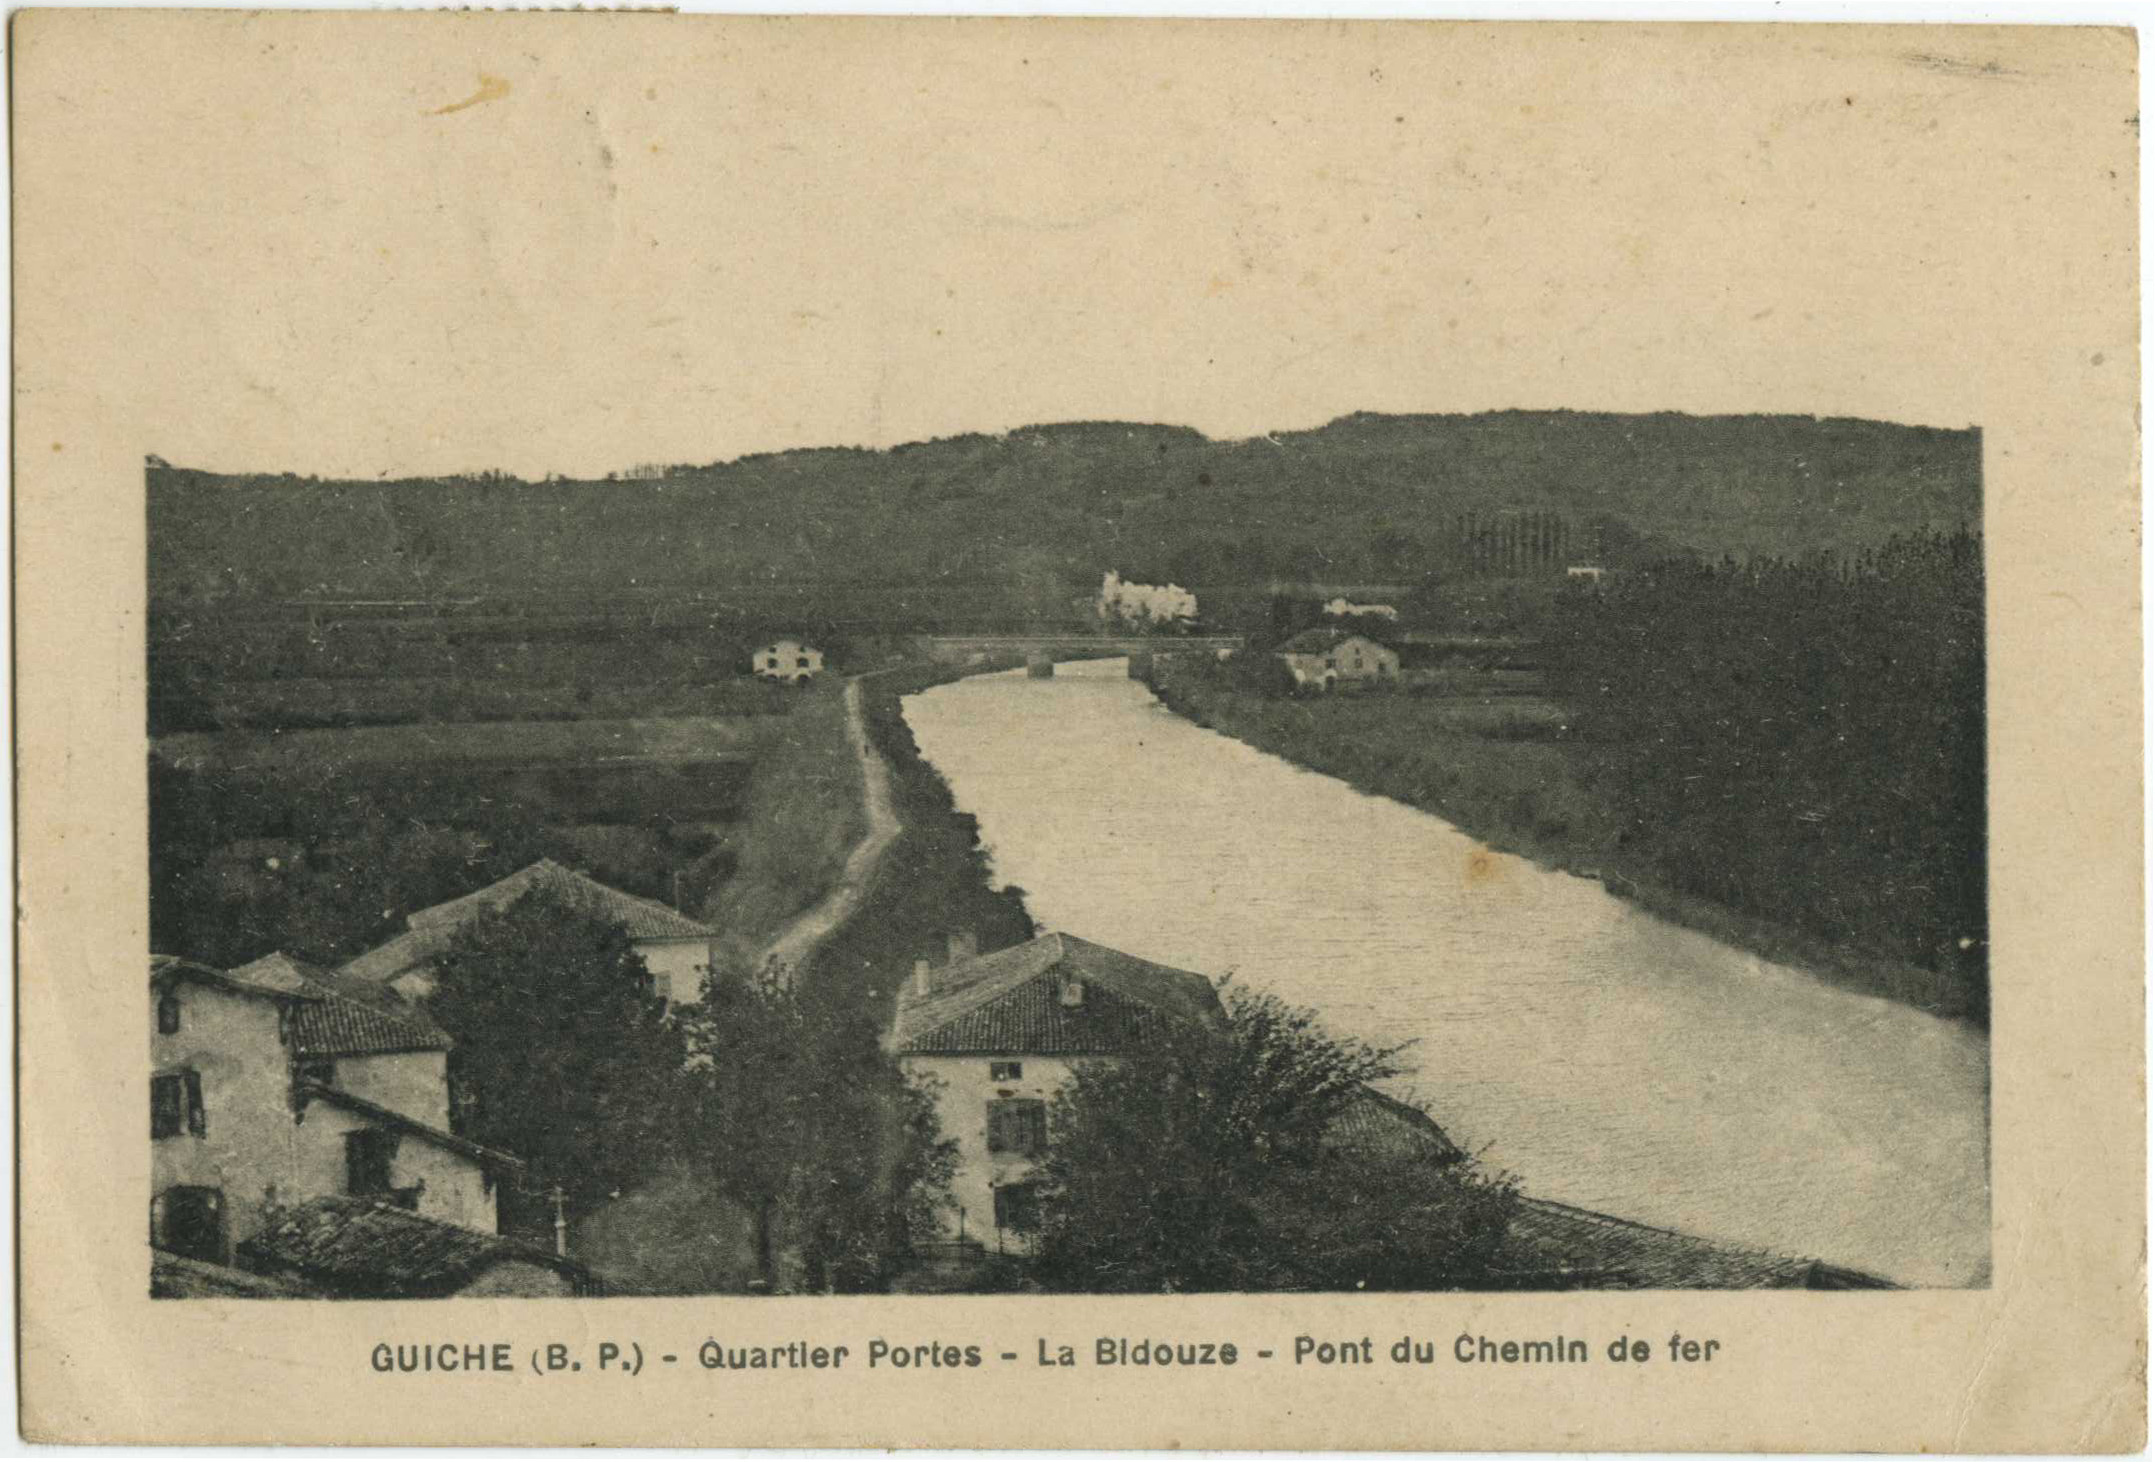 Guiche - Quartier Portes - La Bidouze - Pont du Chemin de fer